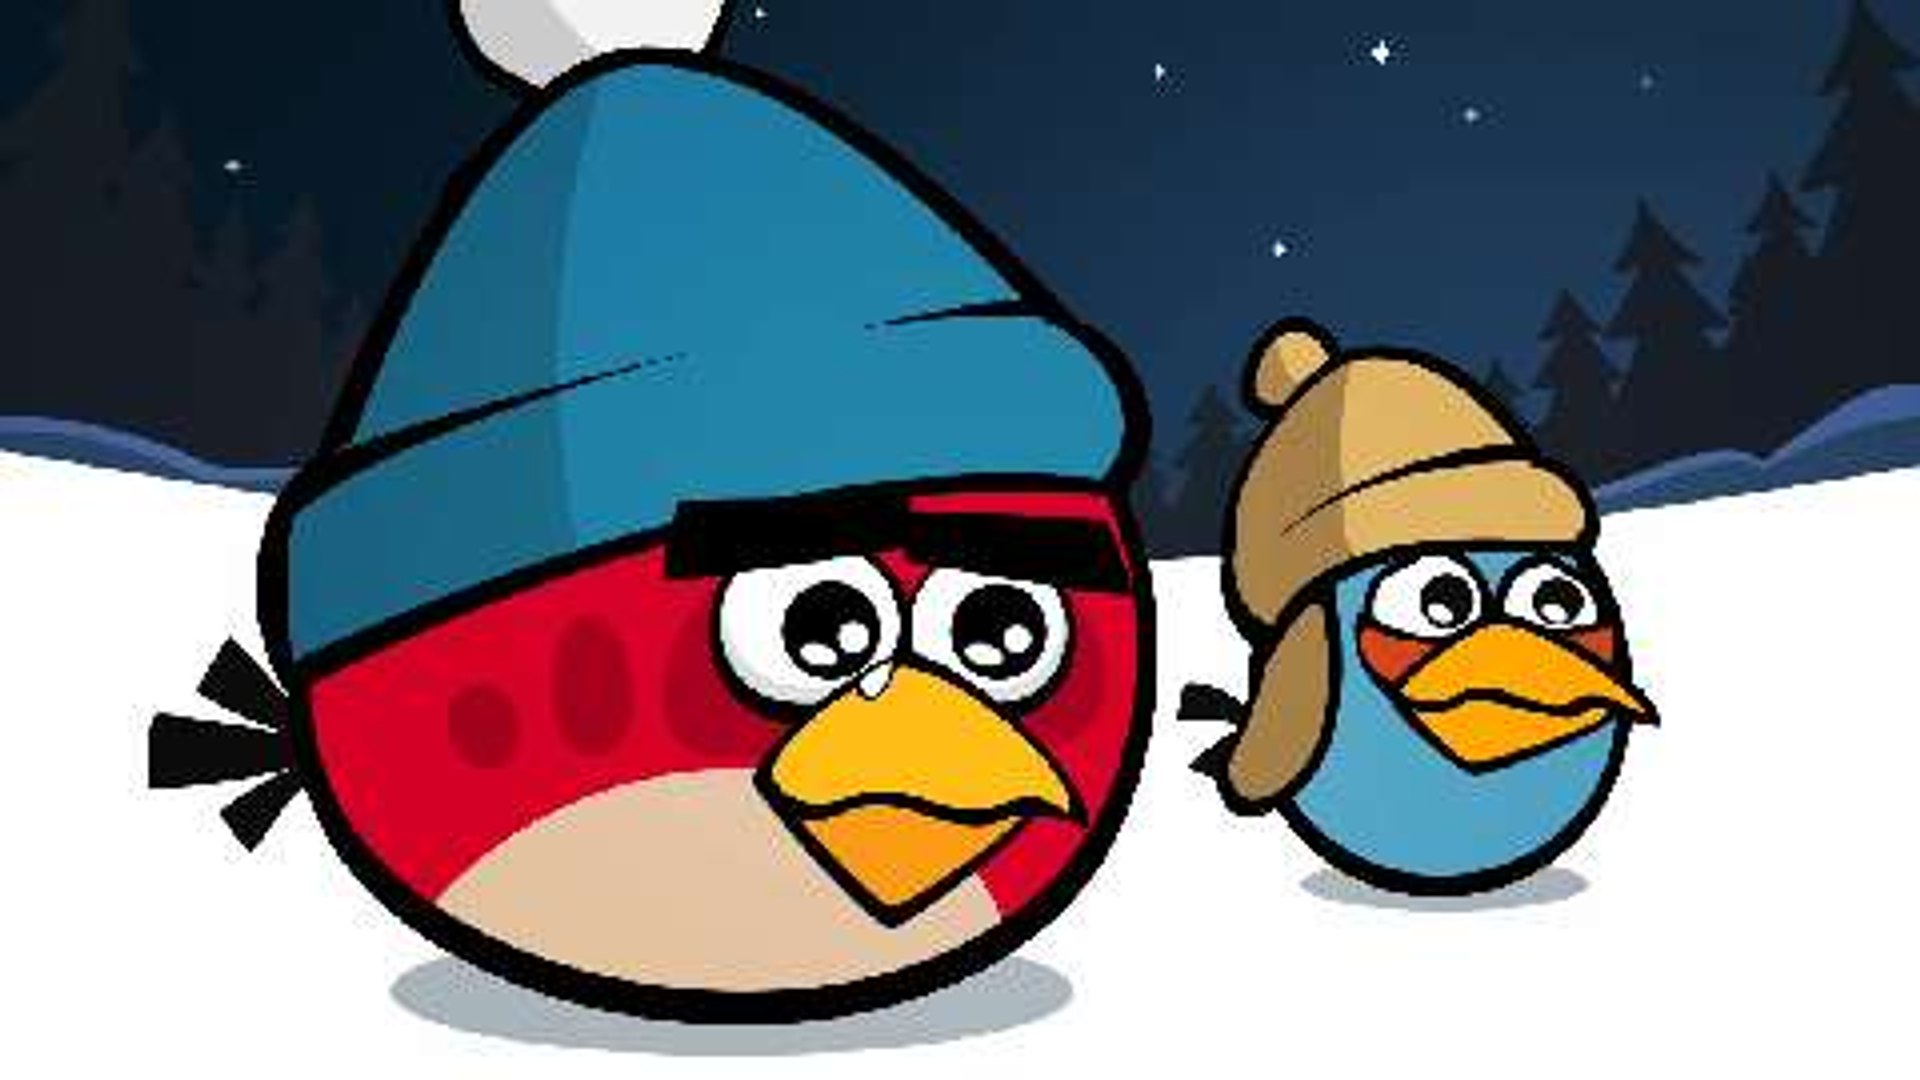 Angry Birds - O Filme - Filme 2016 - AdoroCinema